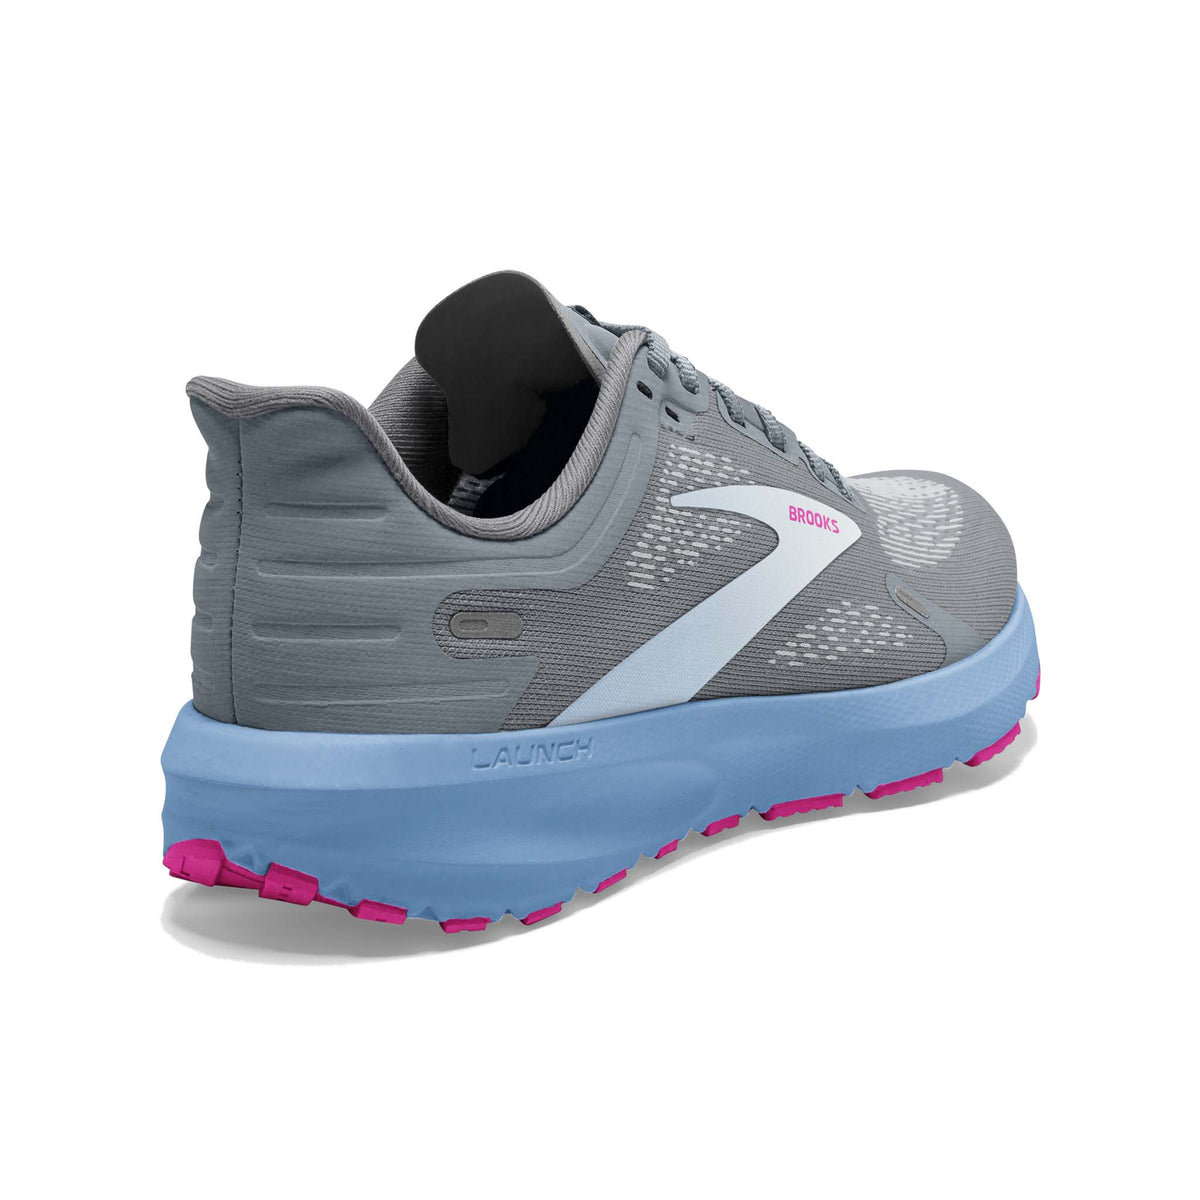 Brooks Launch 9 running femme talon- grey blue pink